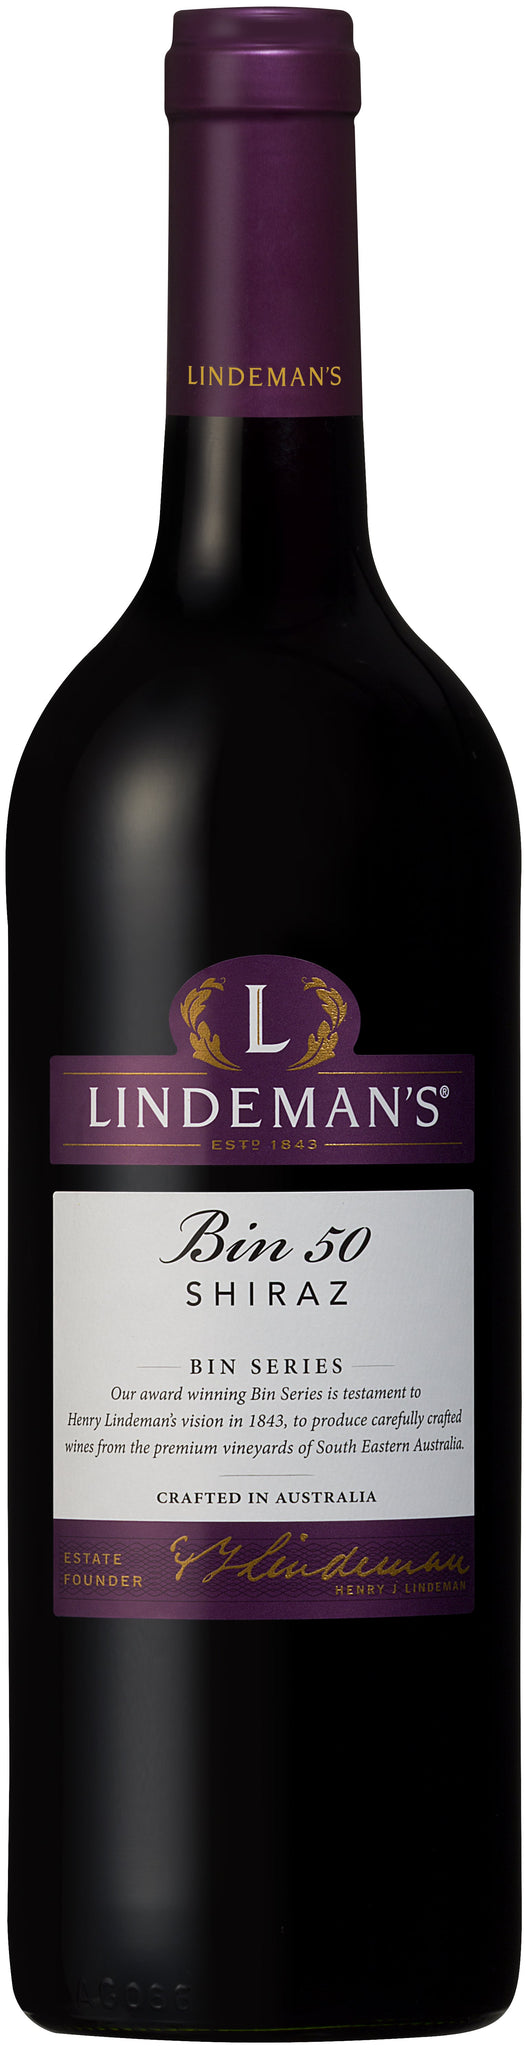 bel>Shiraz, Lindeman's Bin 50